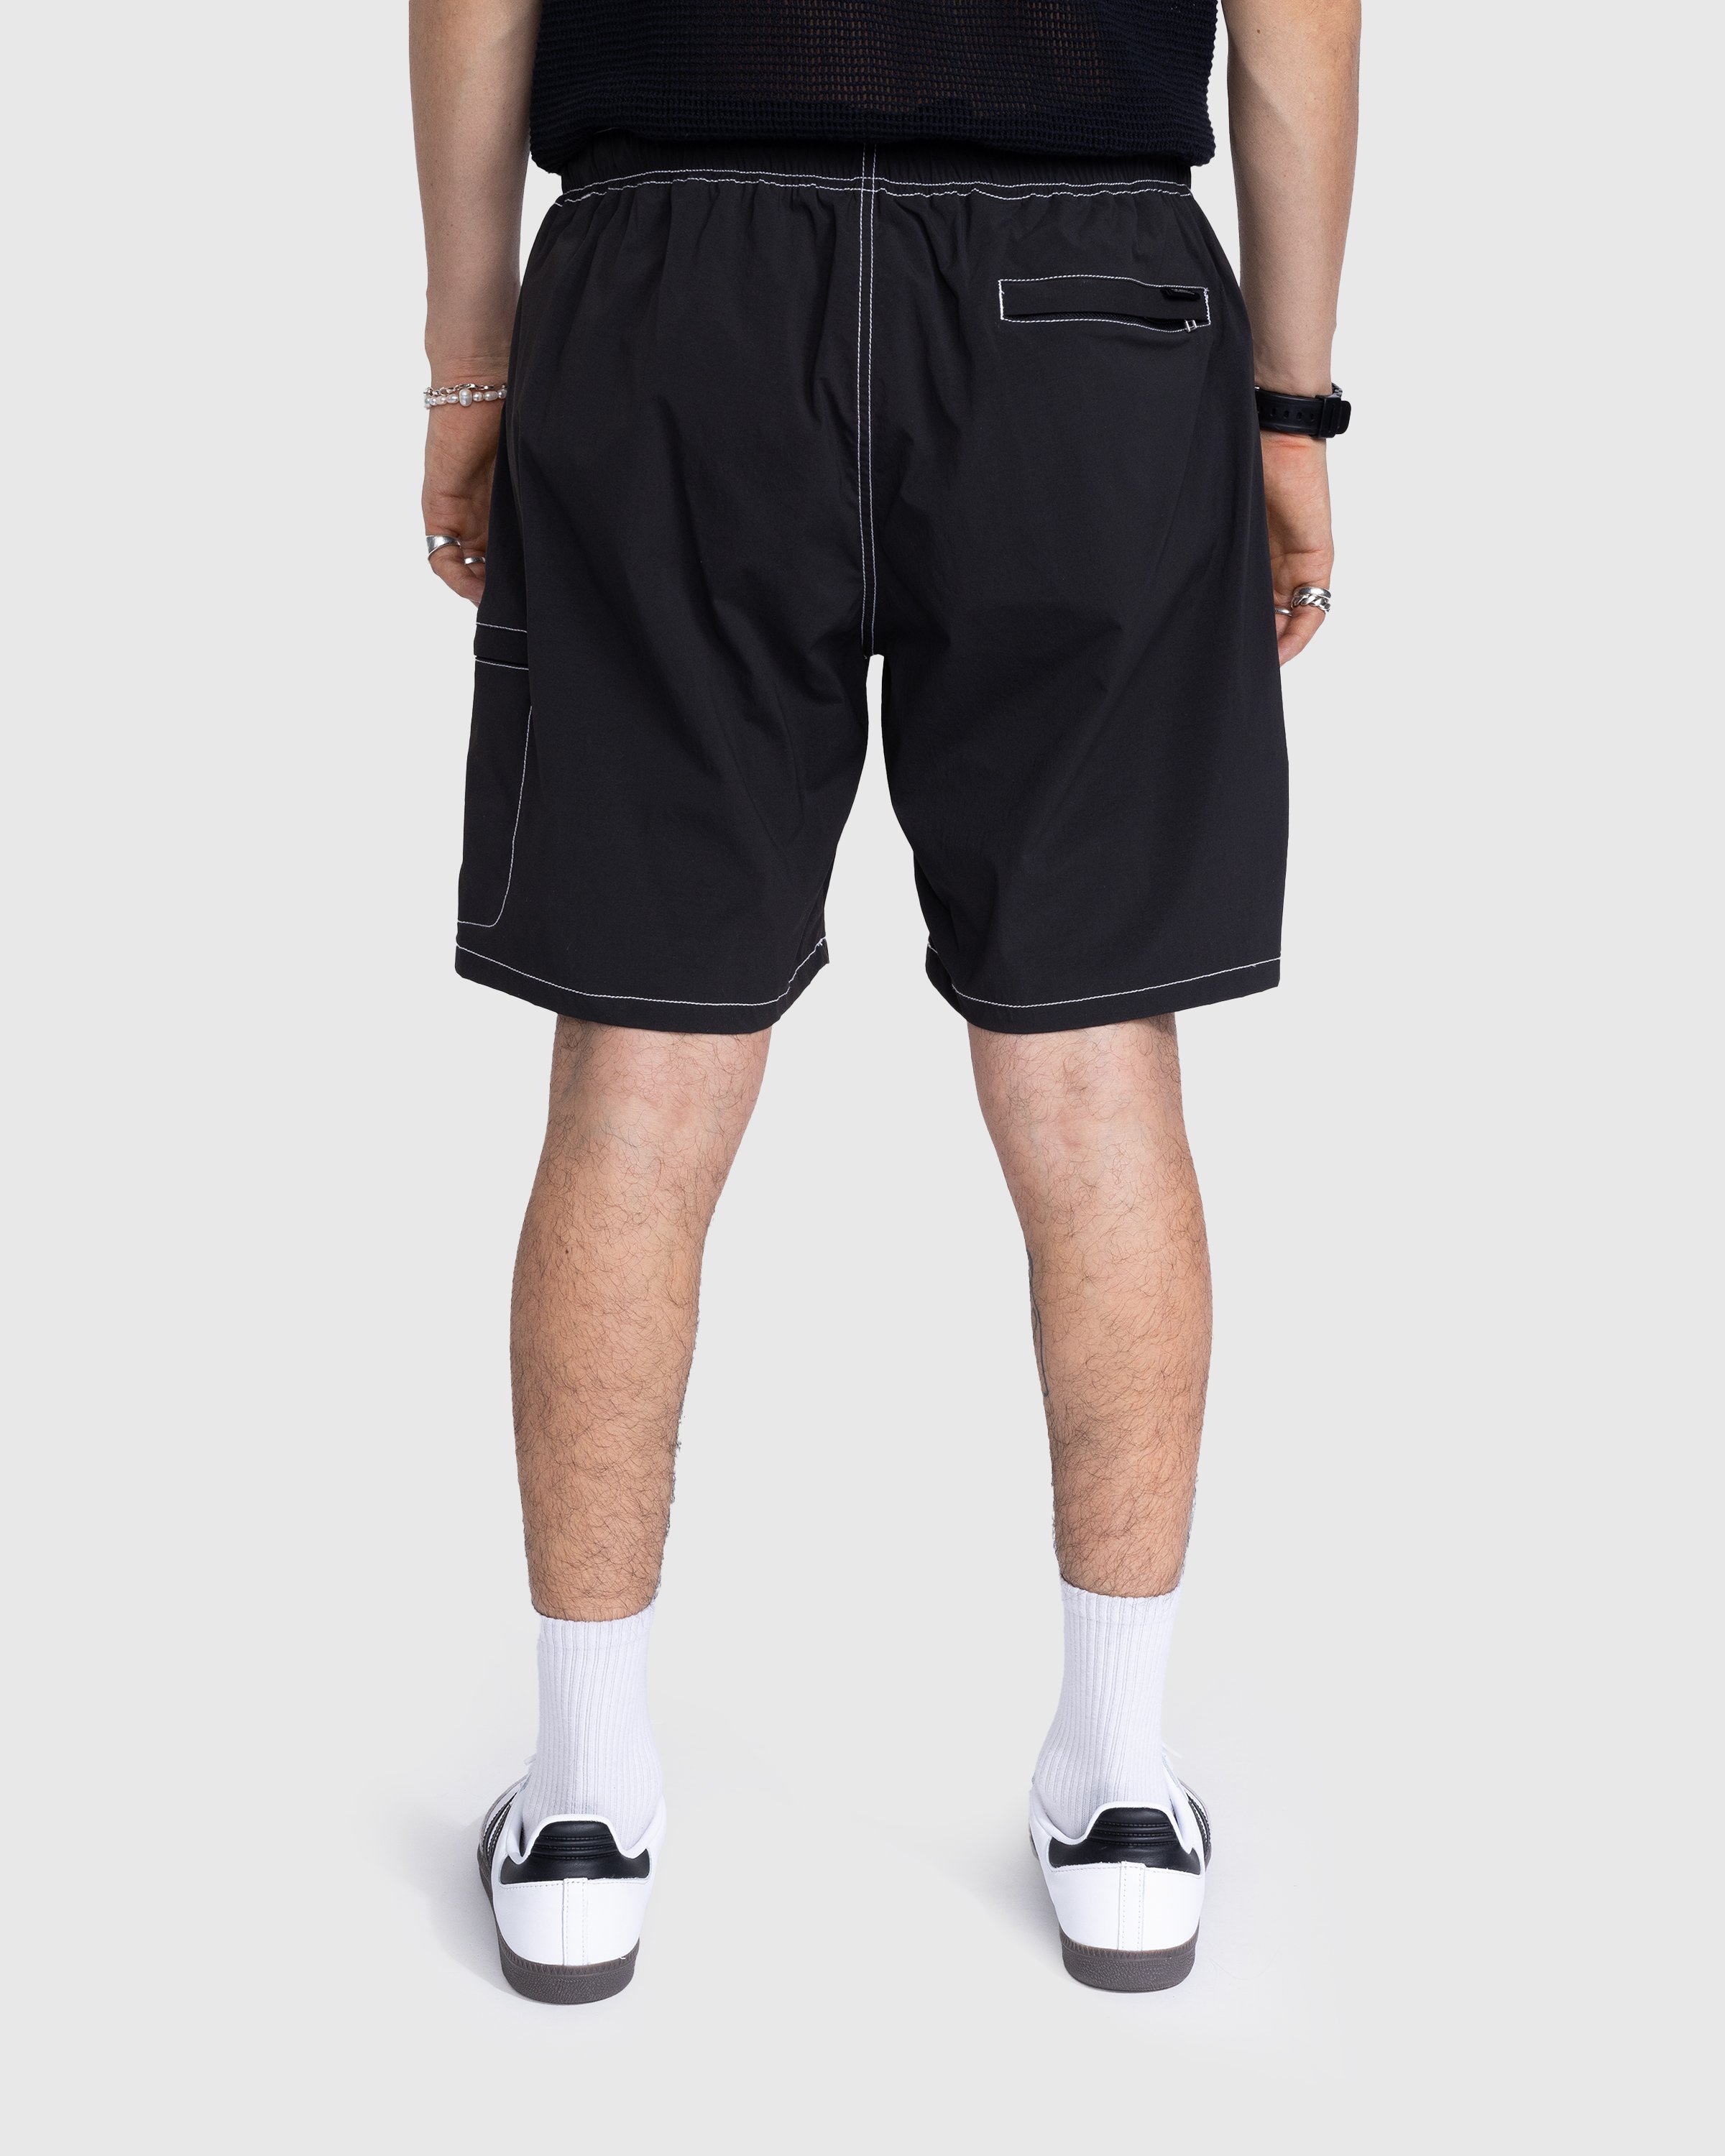 Highsnobiety - Side Cargo Shorts Charcoal Black - Clothing - Black - Image 3